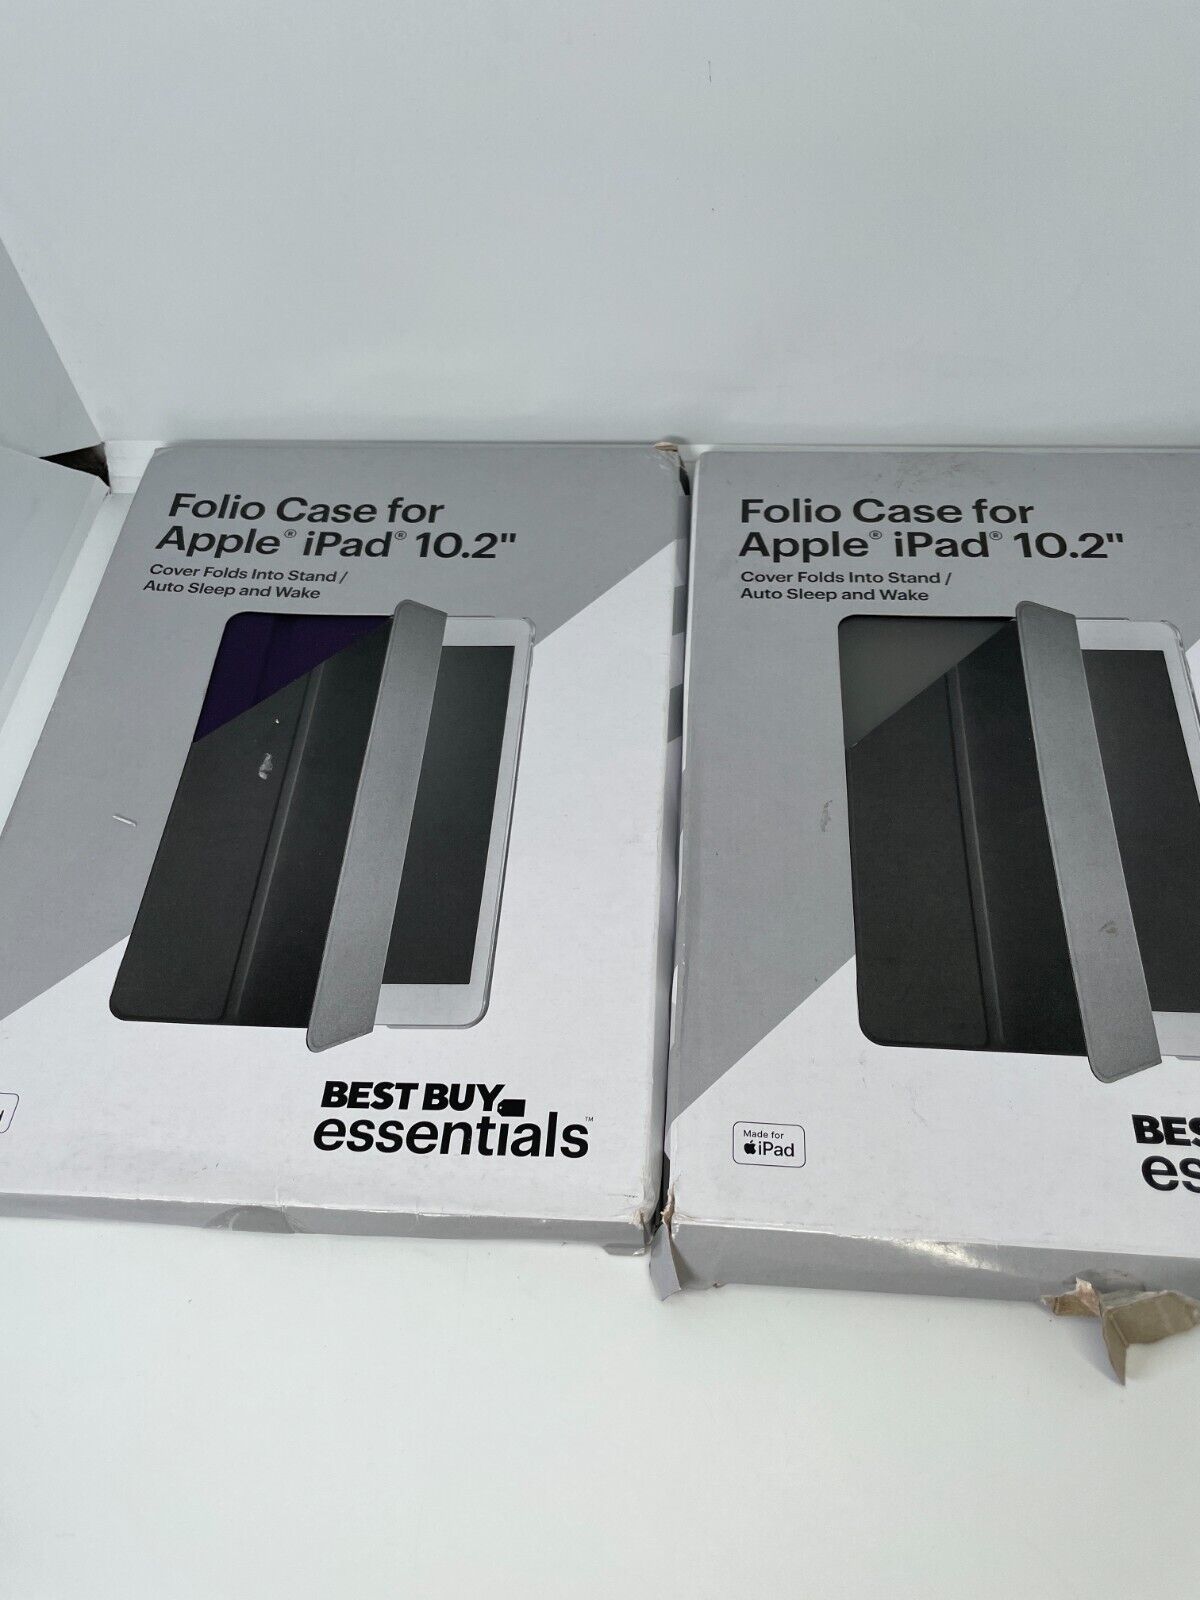 2x Best Buy essentials Folio Case for Apple iPad 10.2